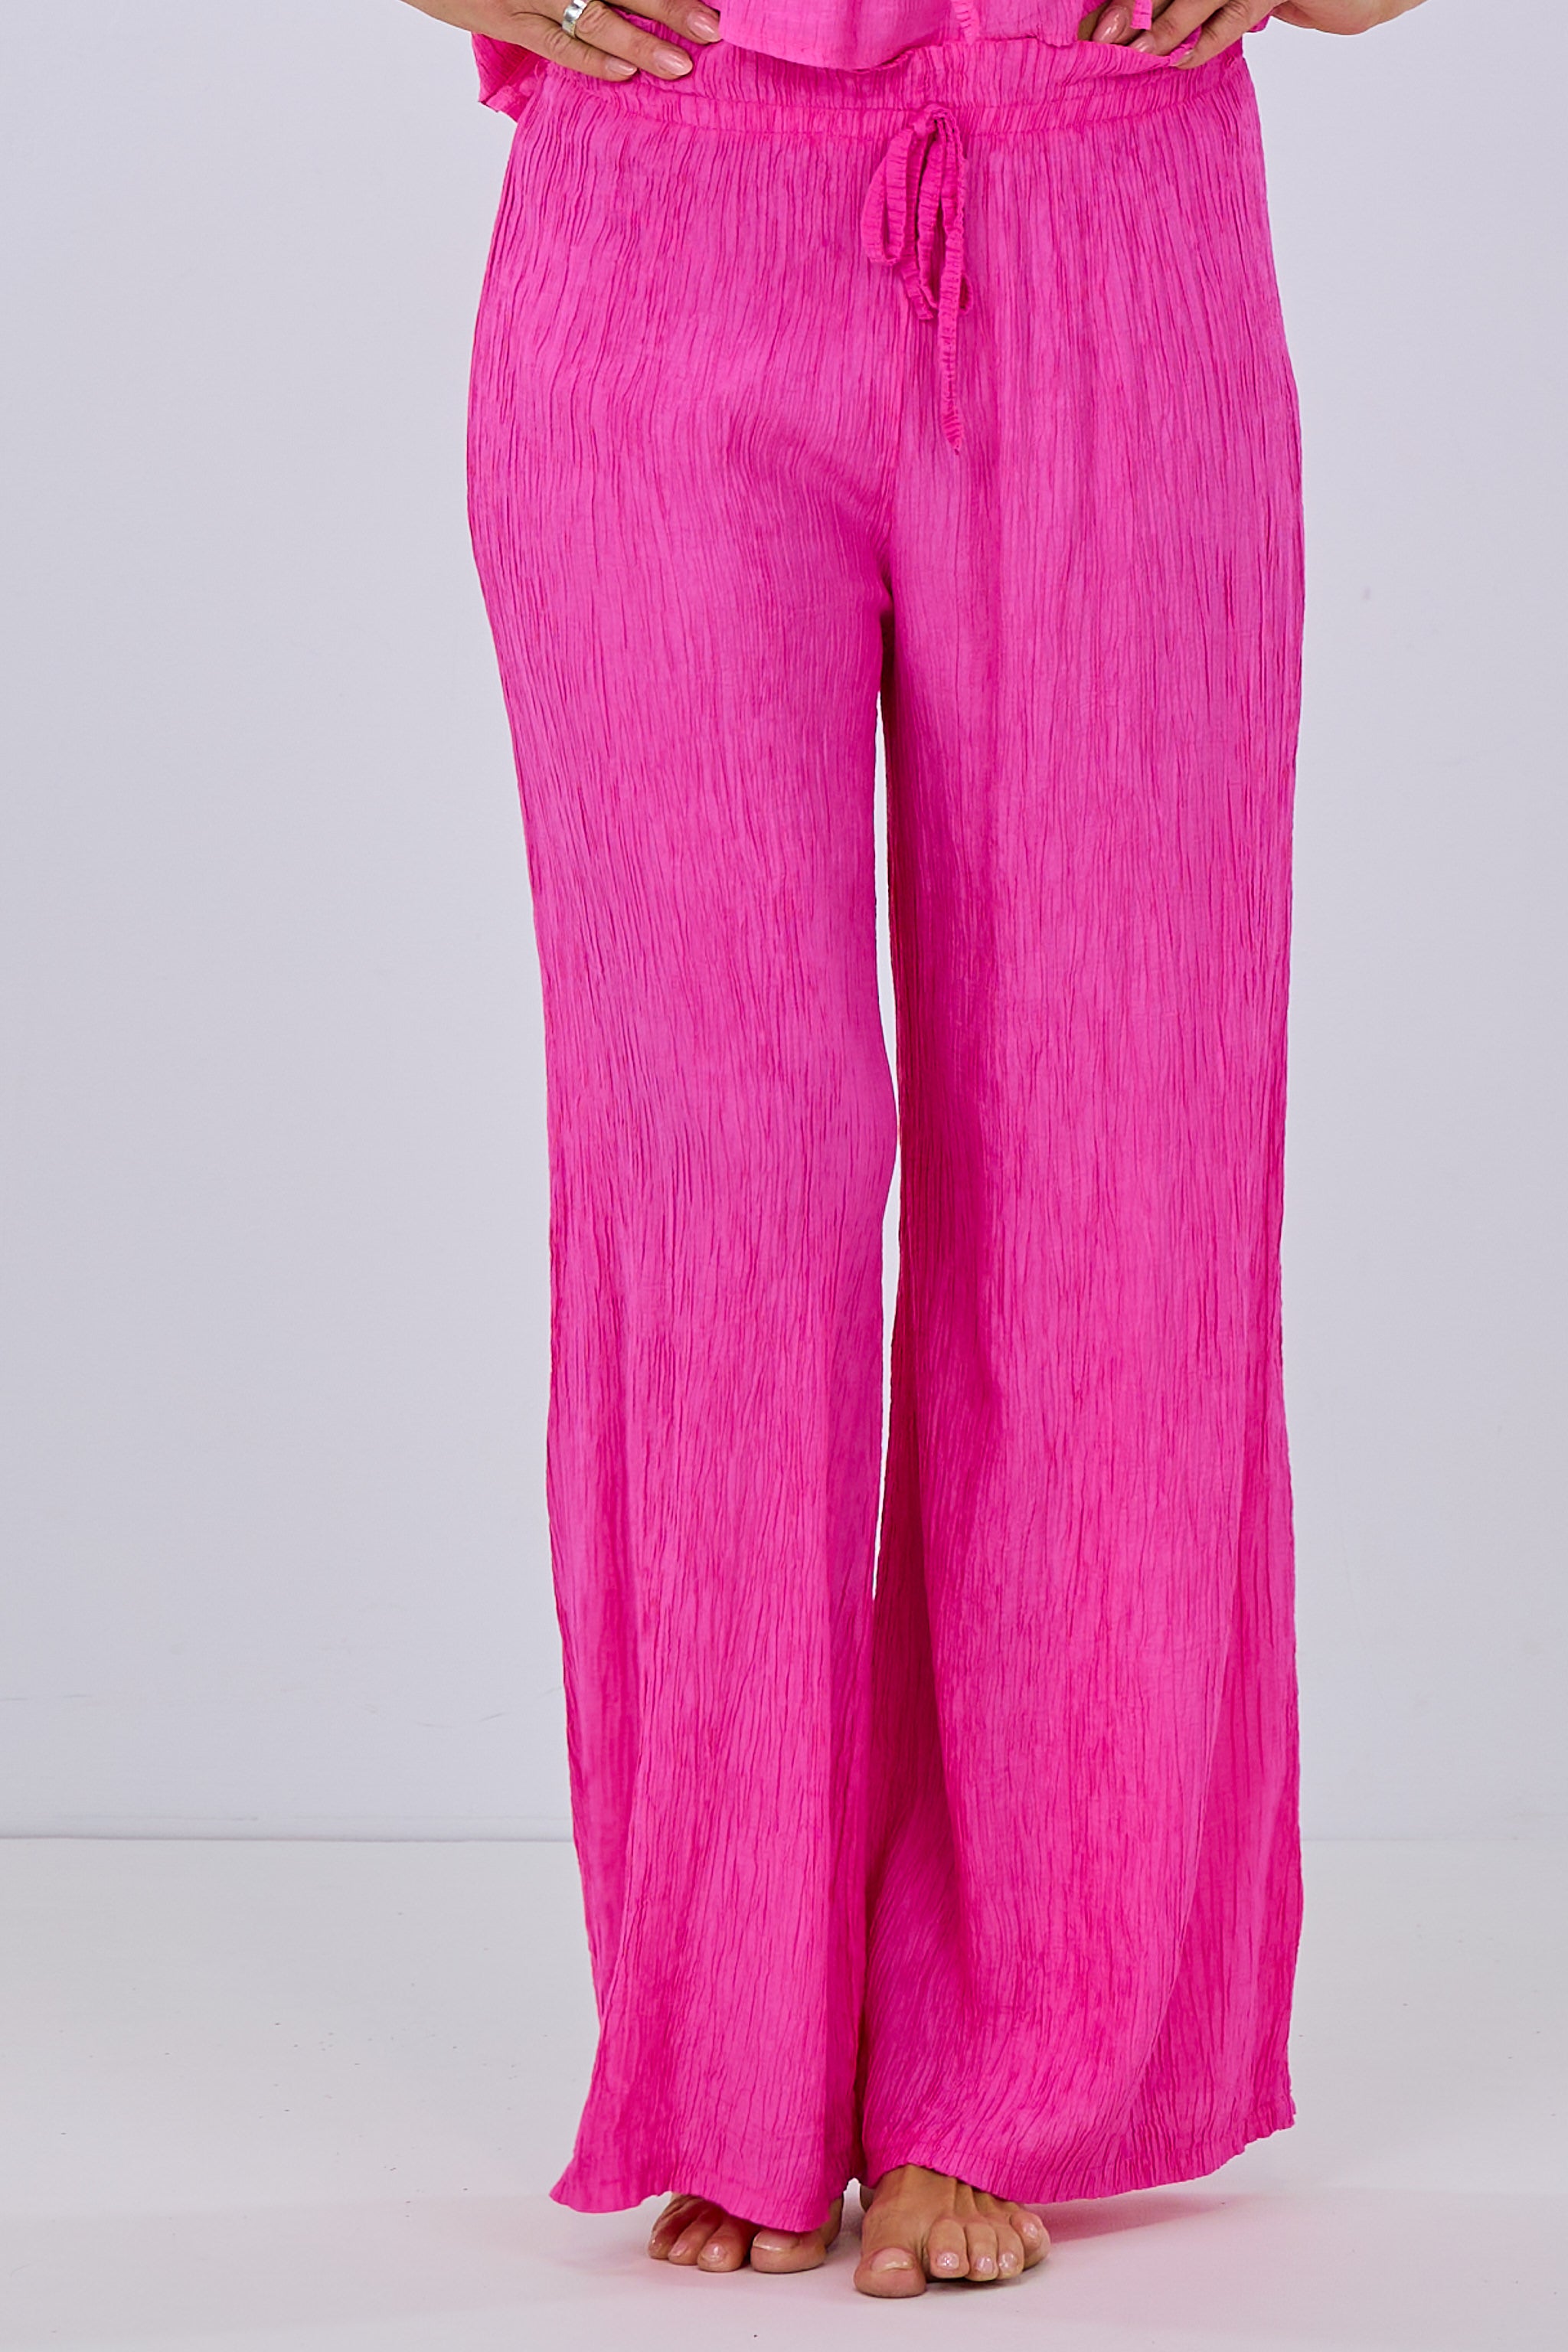 Damen Hose aus Crinkle Stoff pink von Trends & Lifestyle